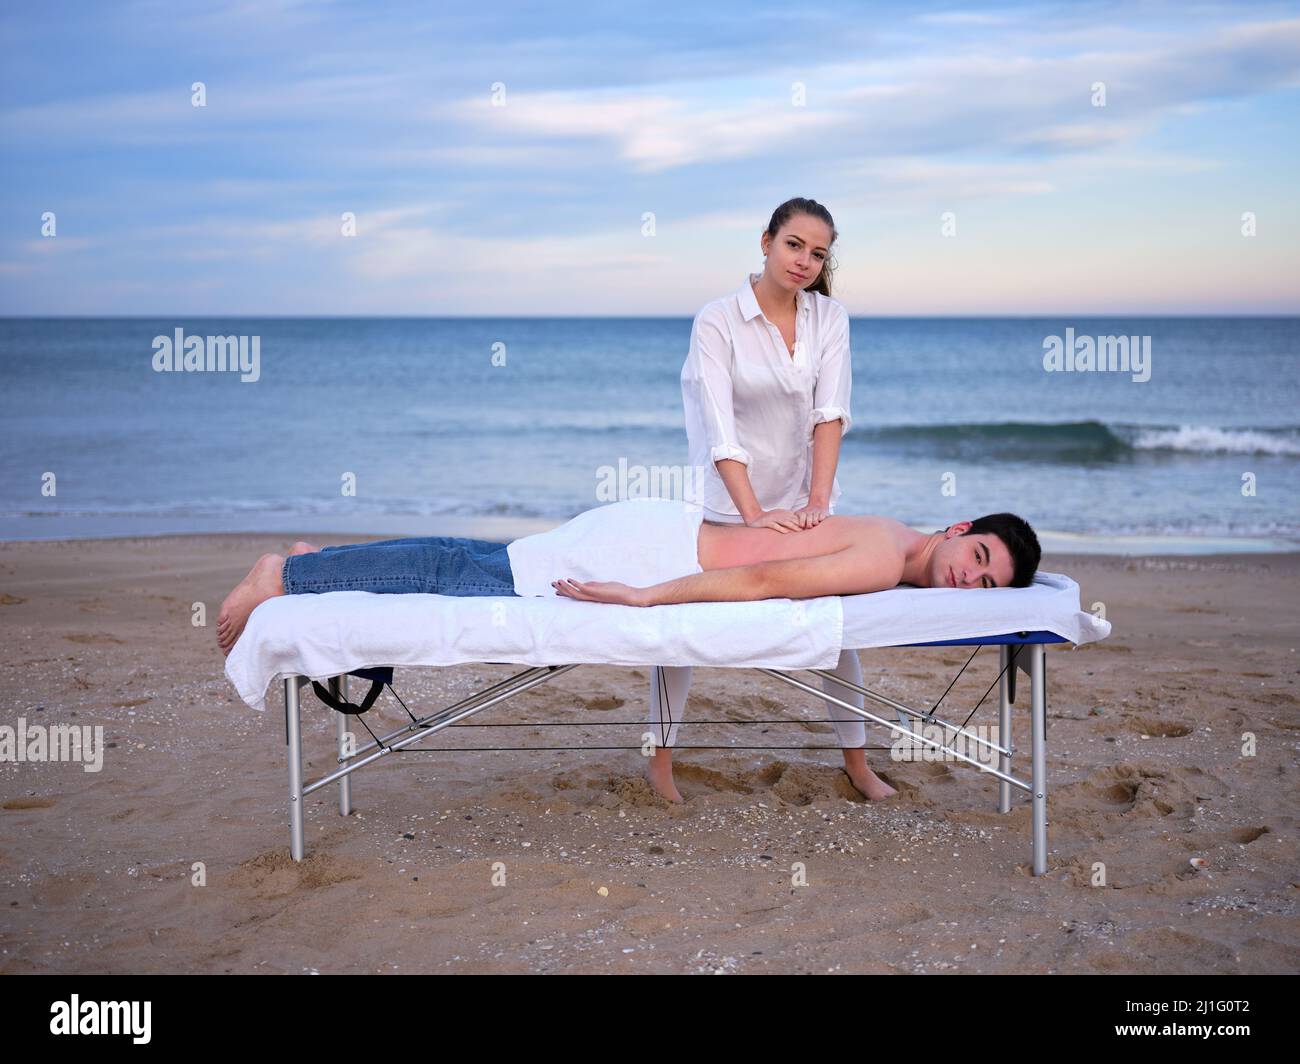 Ein junger Therapeut, der eine Chiromassage an einem jungen Mann zur Behandlung einer Lendenwirbelverletzung im Freien durchführt, und dabei auf einen Strand in Valencia blickt. Stockfoto